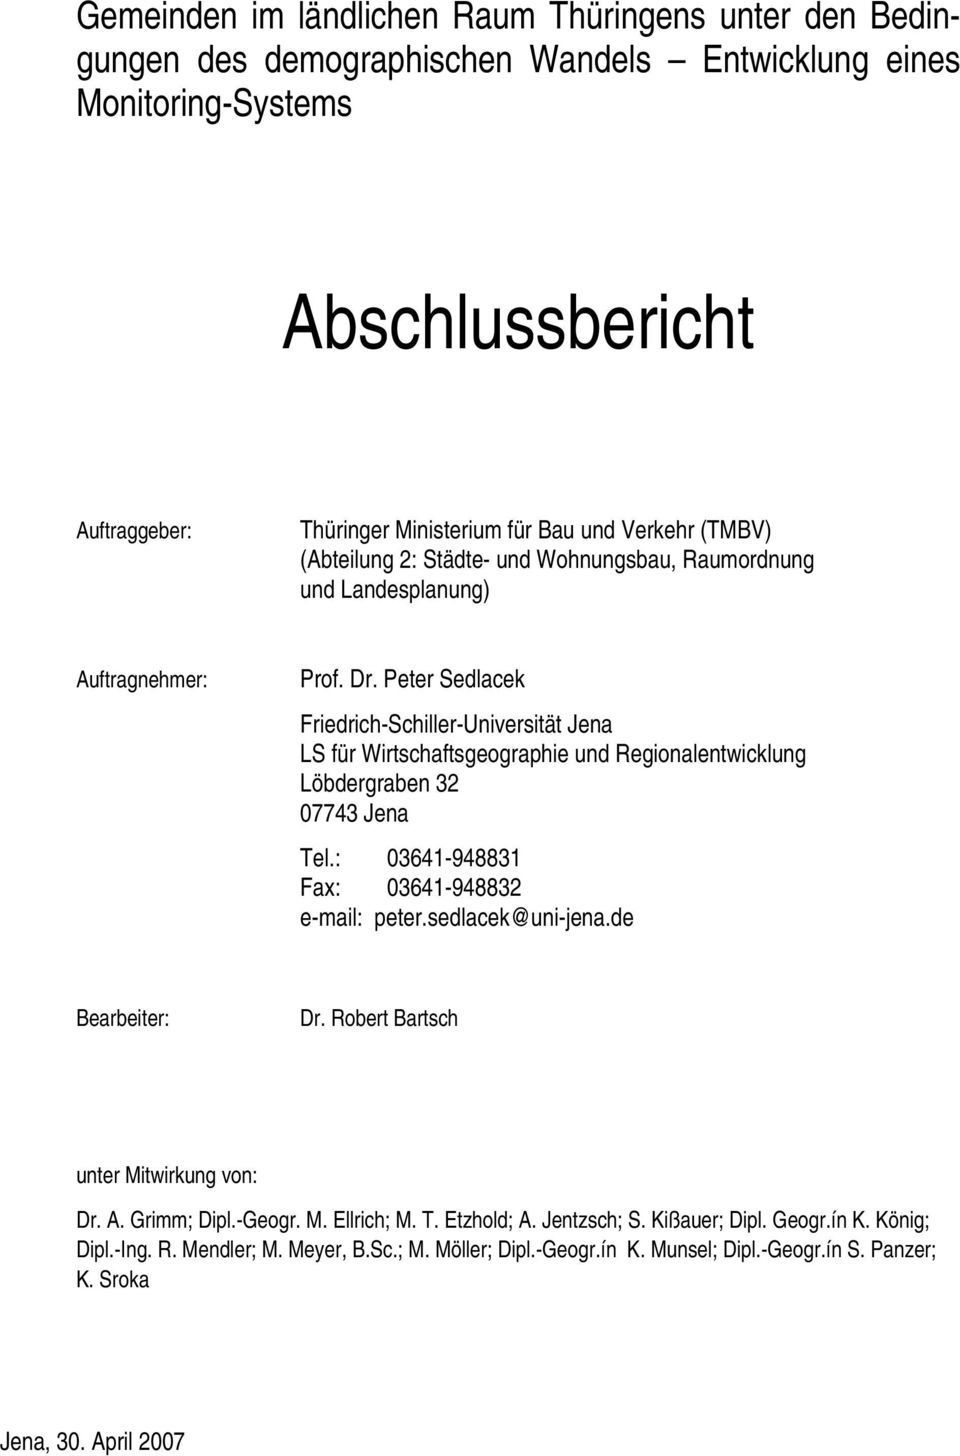 Peter Sedlacek Friedrich-Schiller-Universität Jena LS für Wirtschaftsgeographie und Regionalentwicklung Löbdergraben 32 07743 Jena Tel.: 03641-948831 Fax: 03641-948832 e-mail: peter.